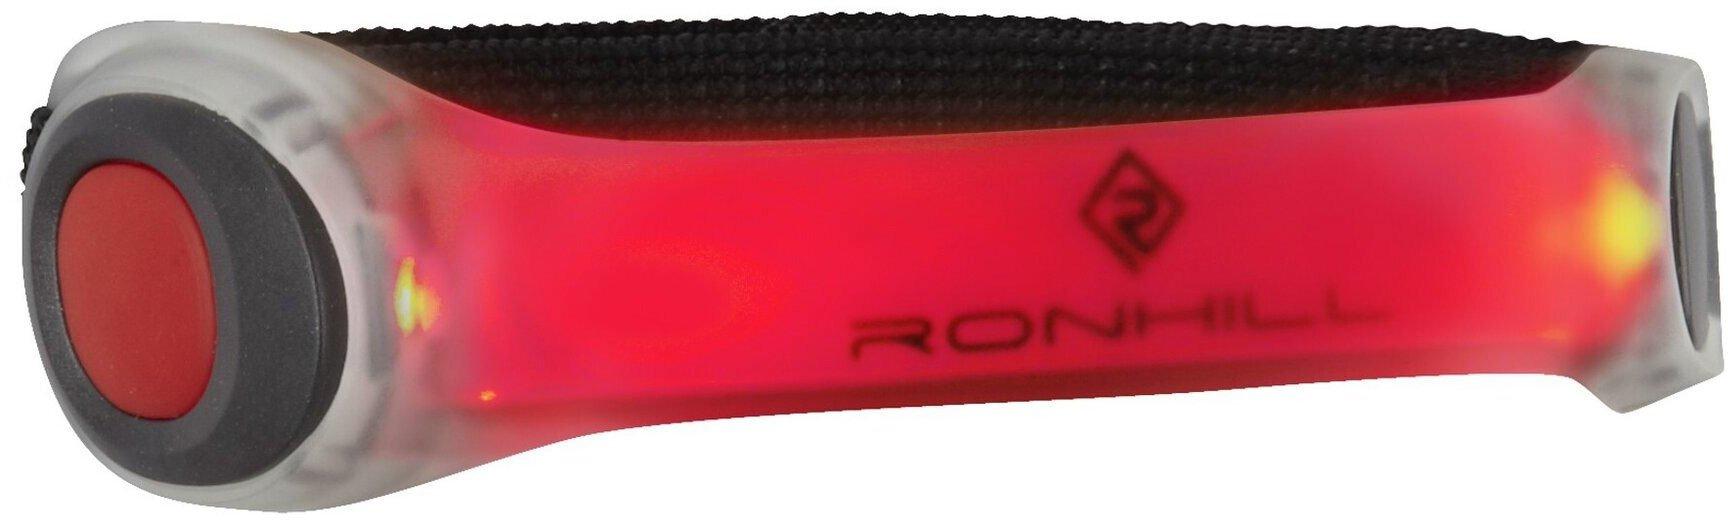 Ronhill Light Armband Glow